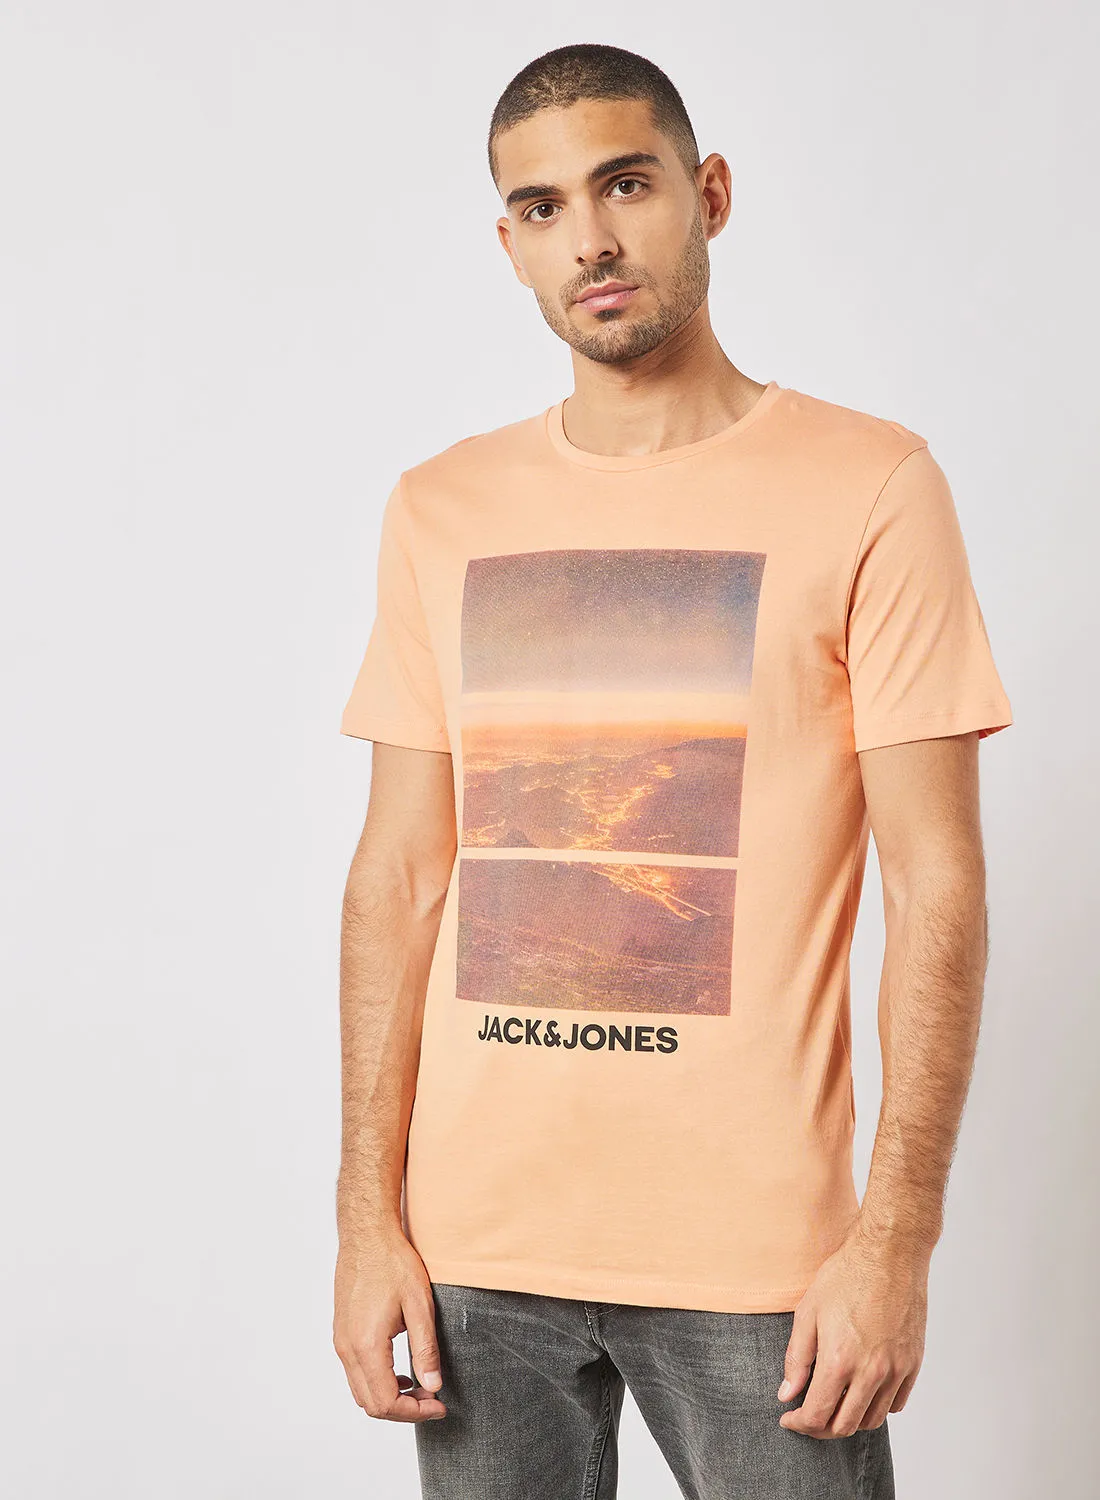 JACK & JONES Front Graphic T-Shirt